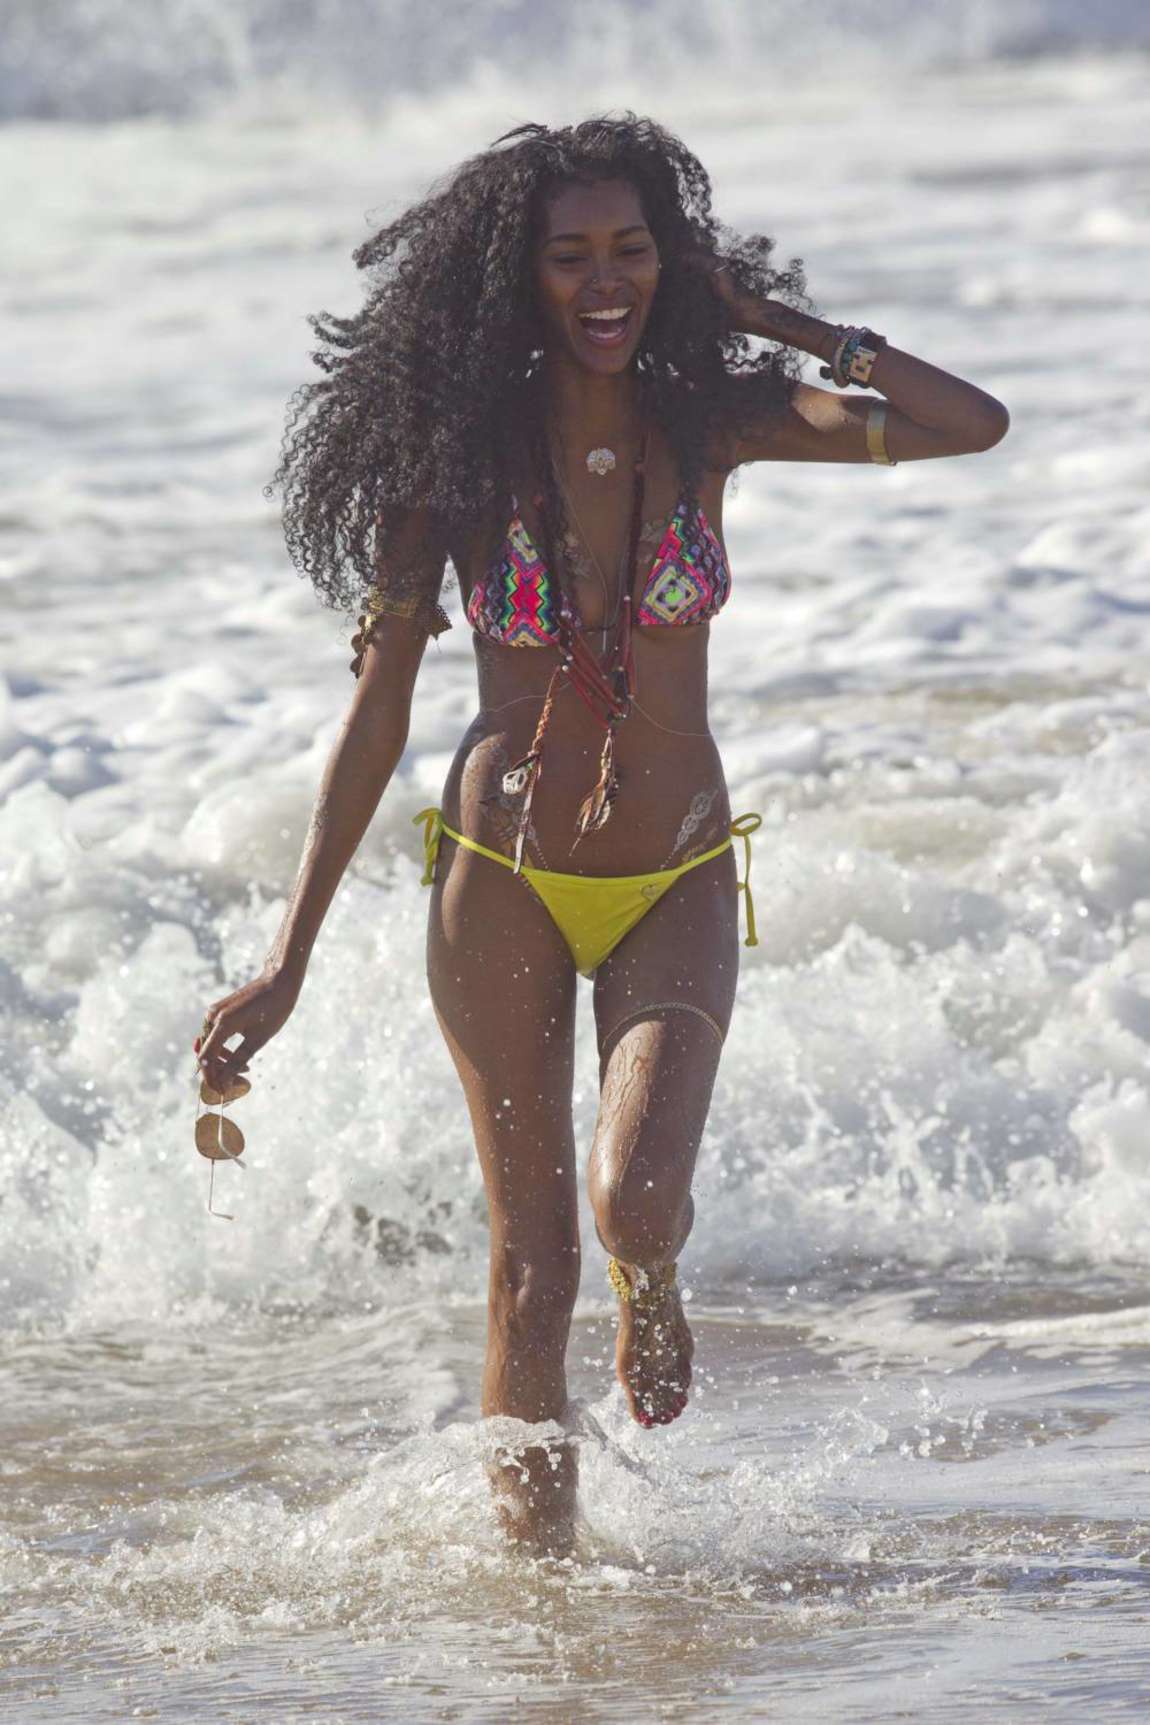 Onun ince vücudu ve Siyah saç stili sütyensiz (cup size 32C) plajda bikinili
